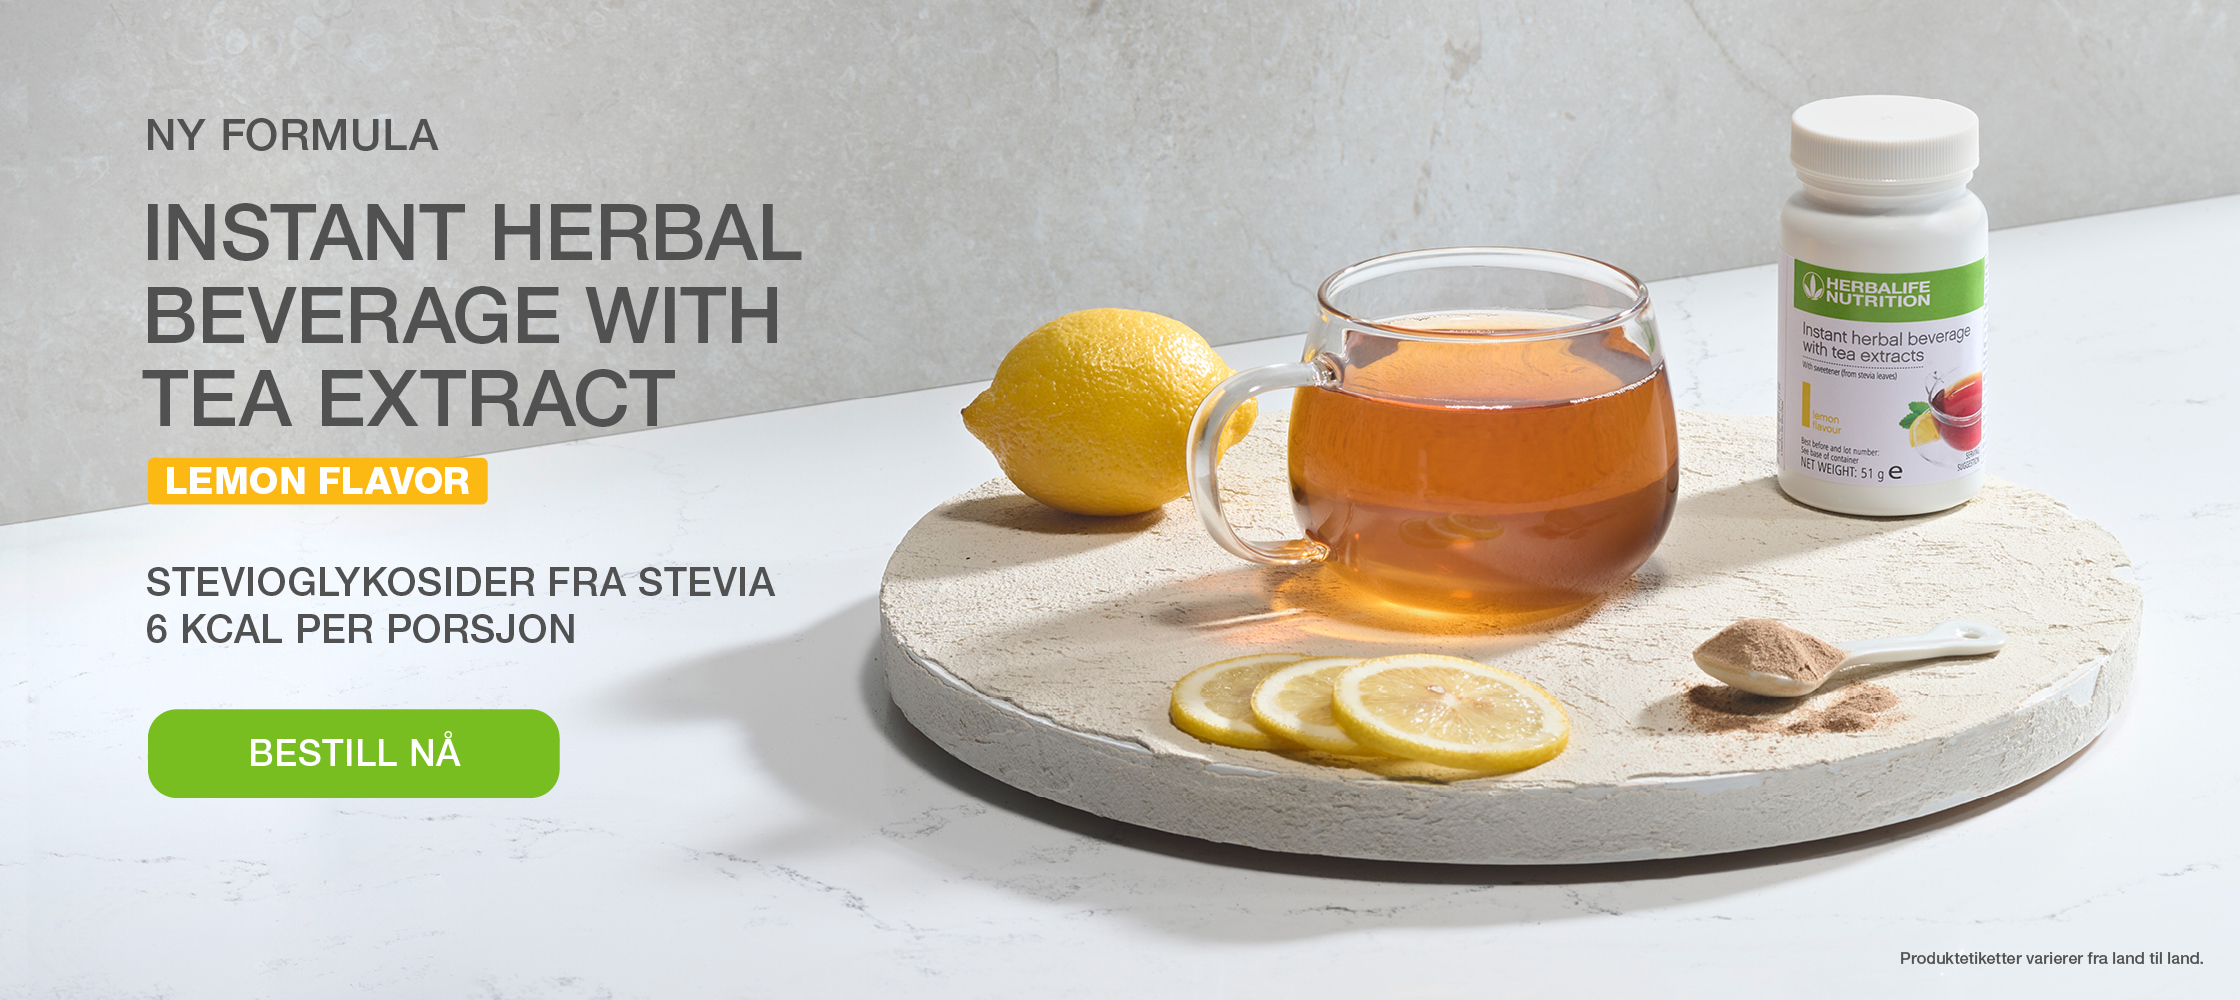 Instant Herbal Beverage with tea extract Lemon flavor